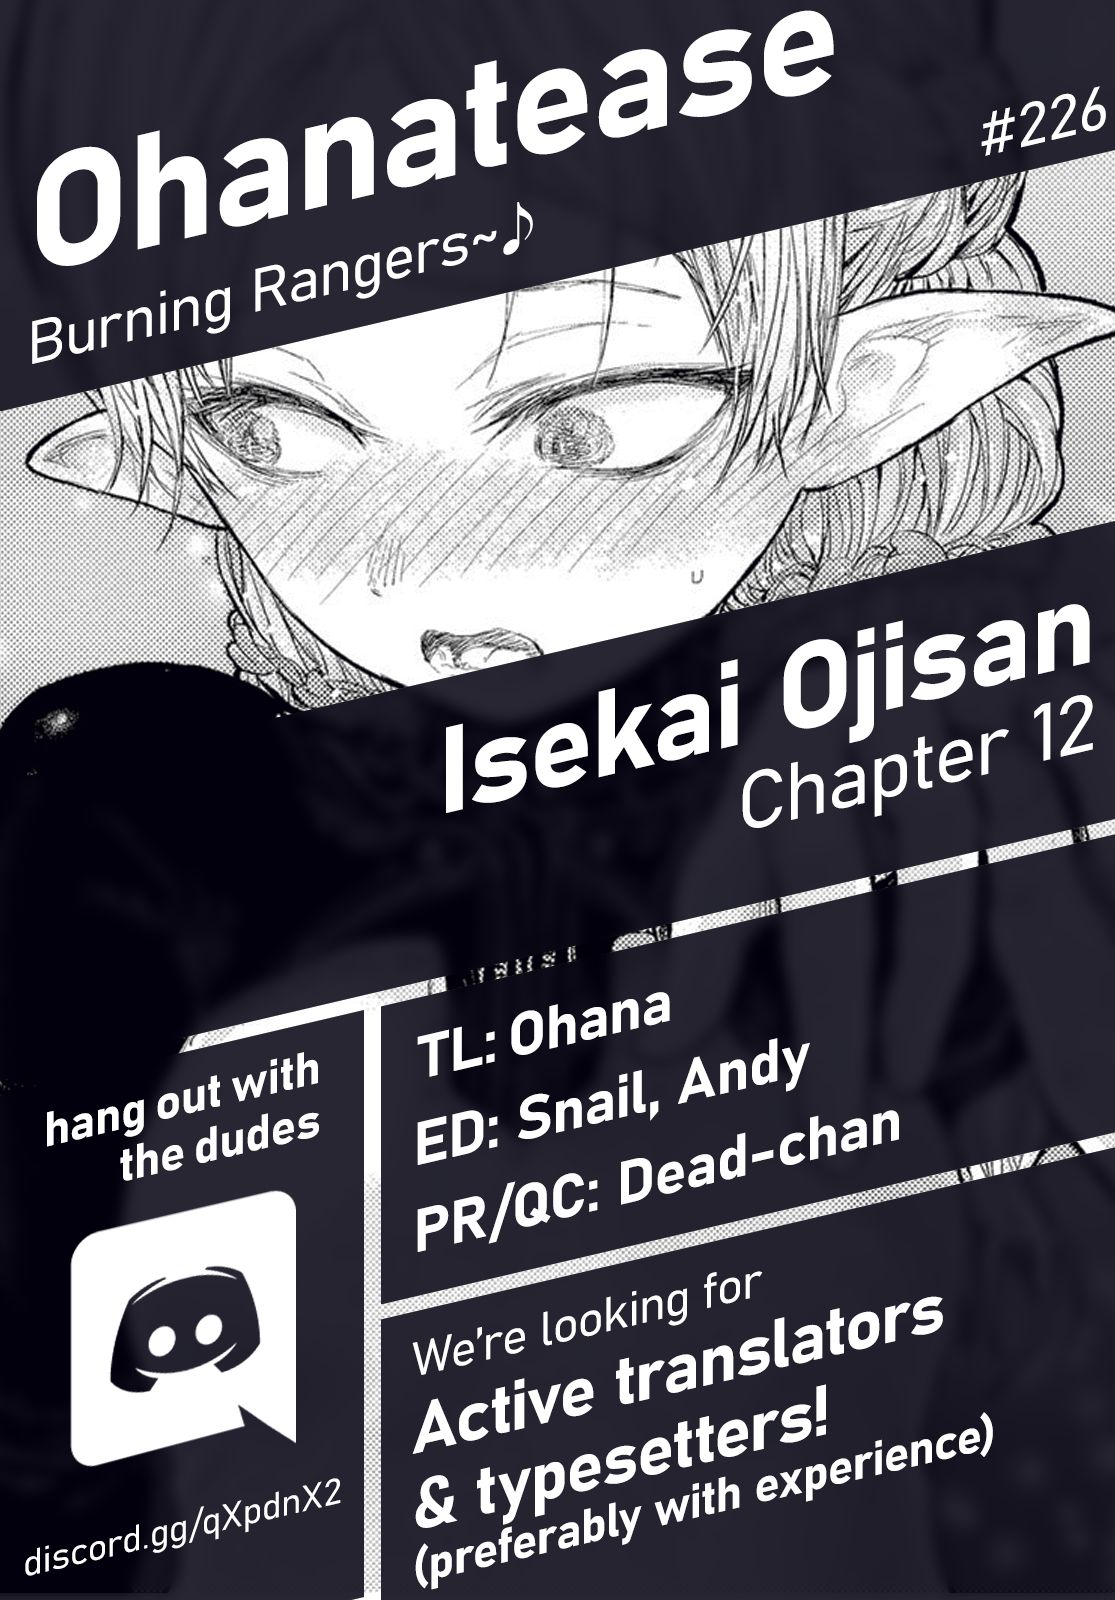 Isekai Ojisan Vol.2 Chapter 12